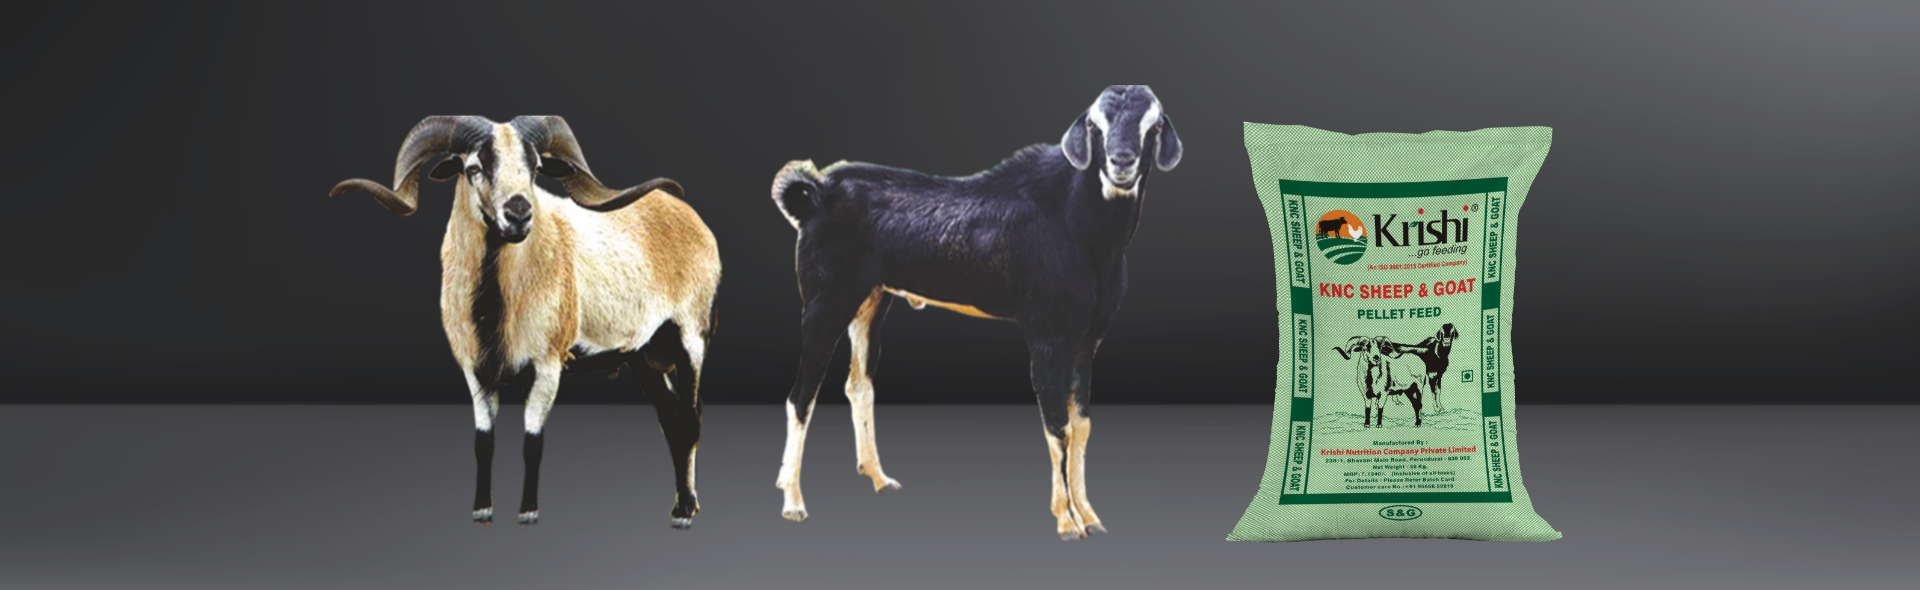 sheep-goat-feed